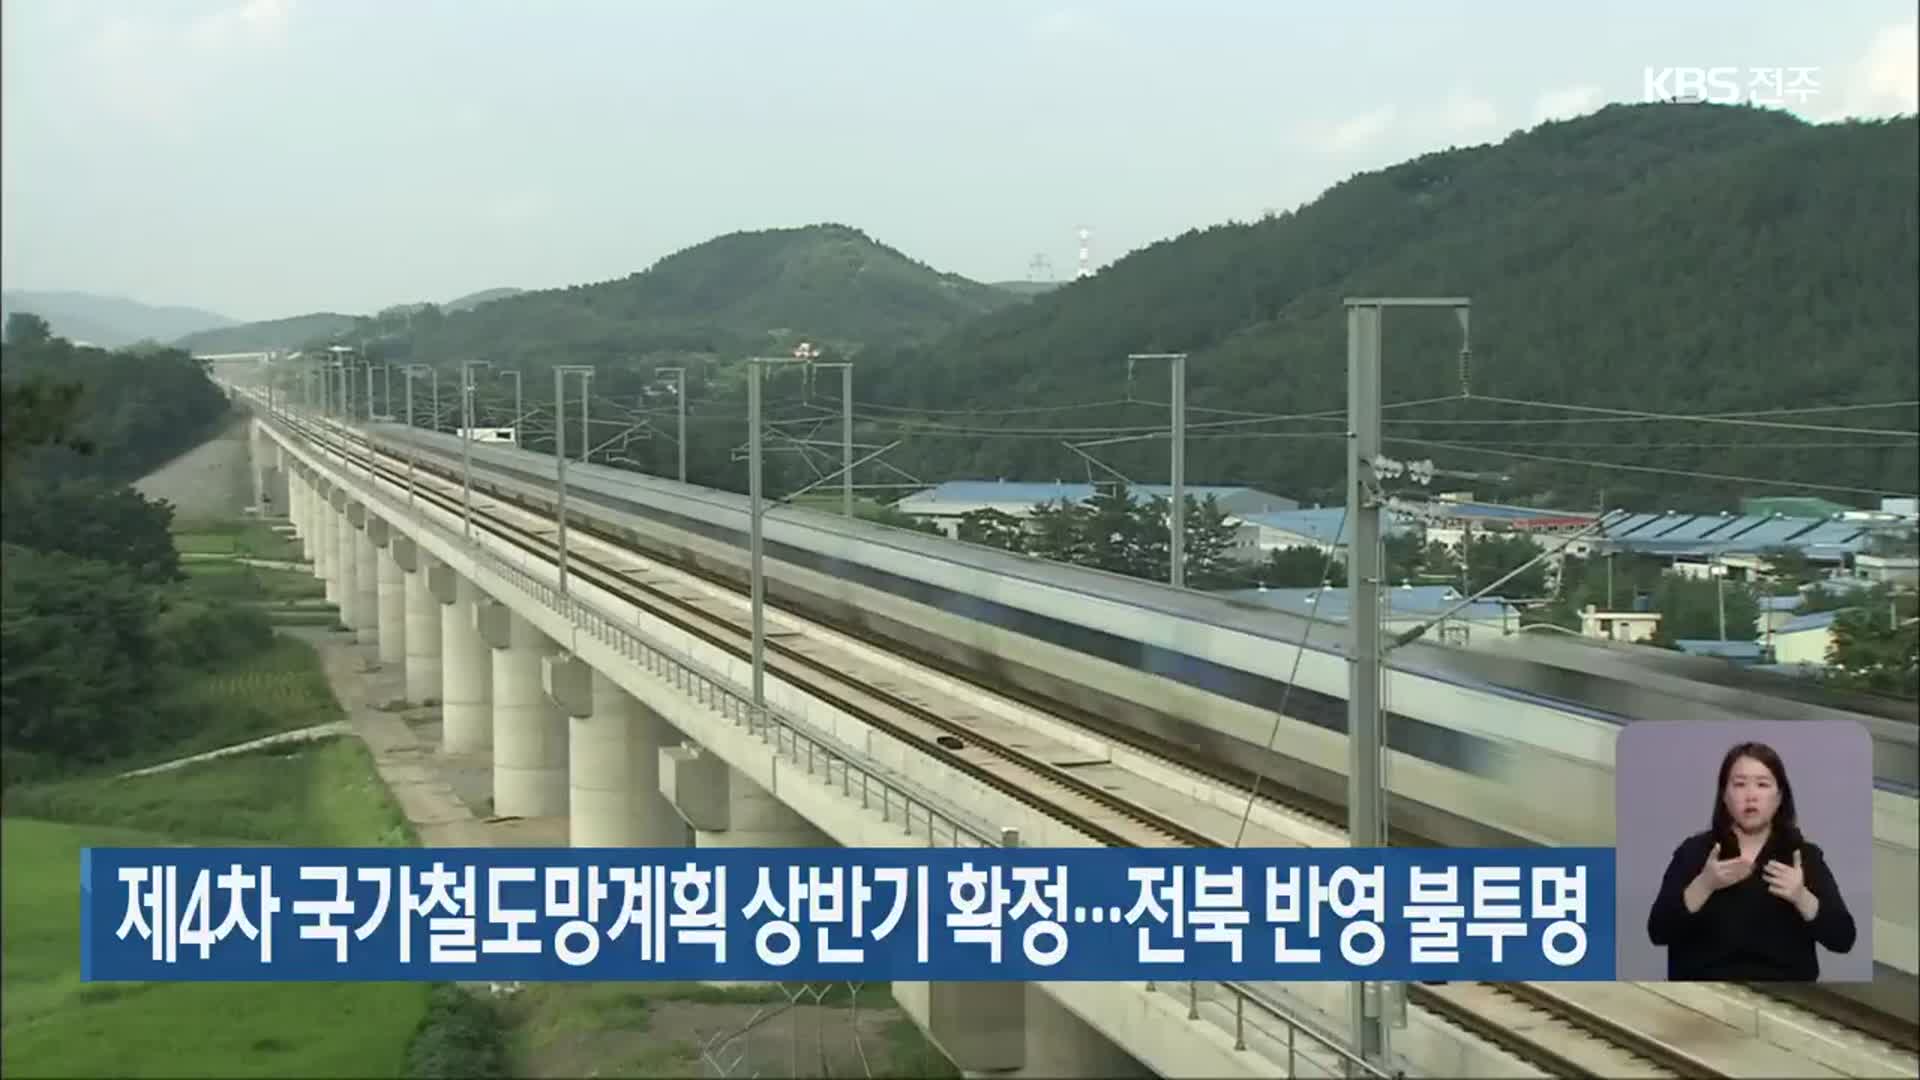 제4차 국가철도망계획 상반기 확정…전북 반영 불투명